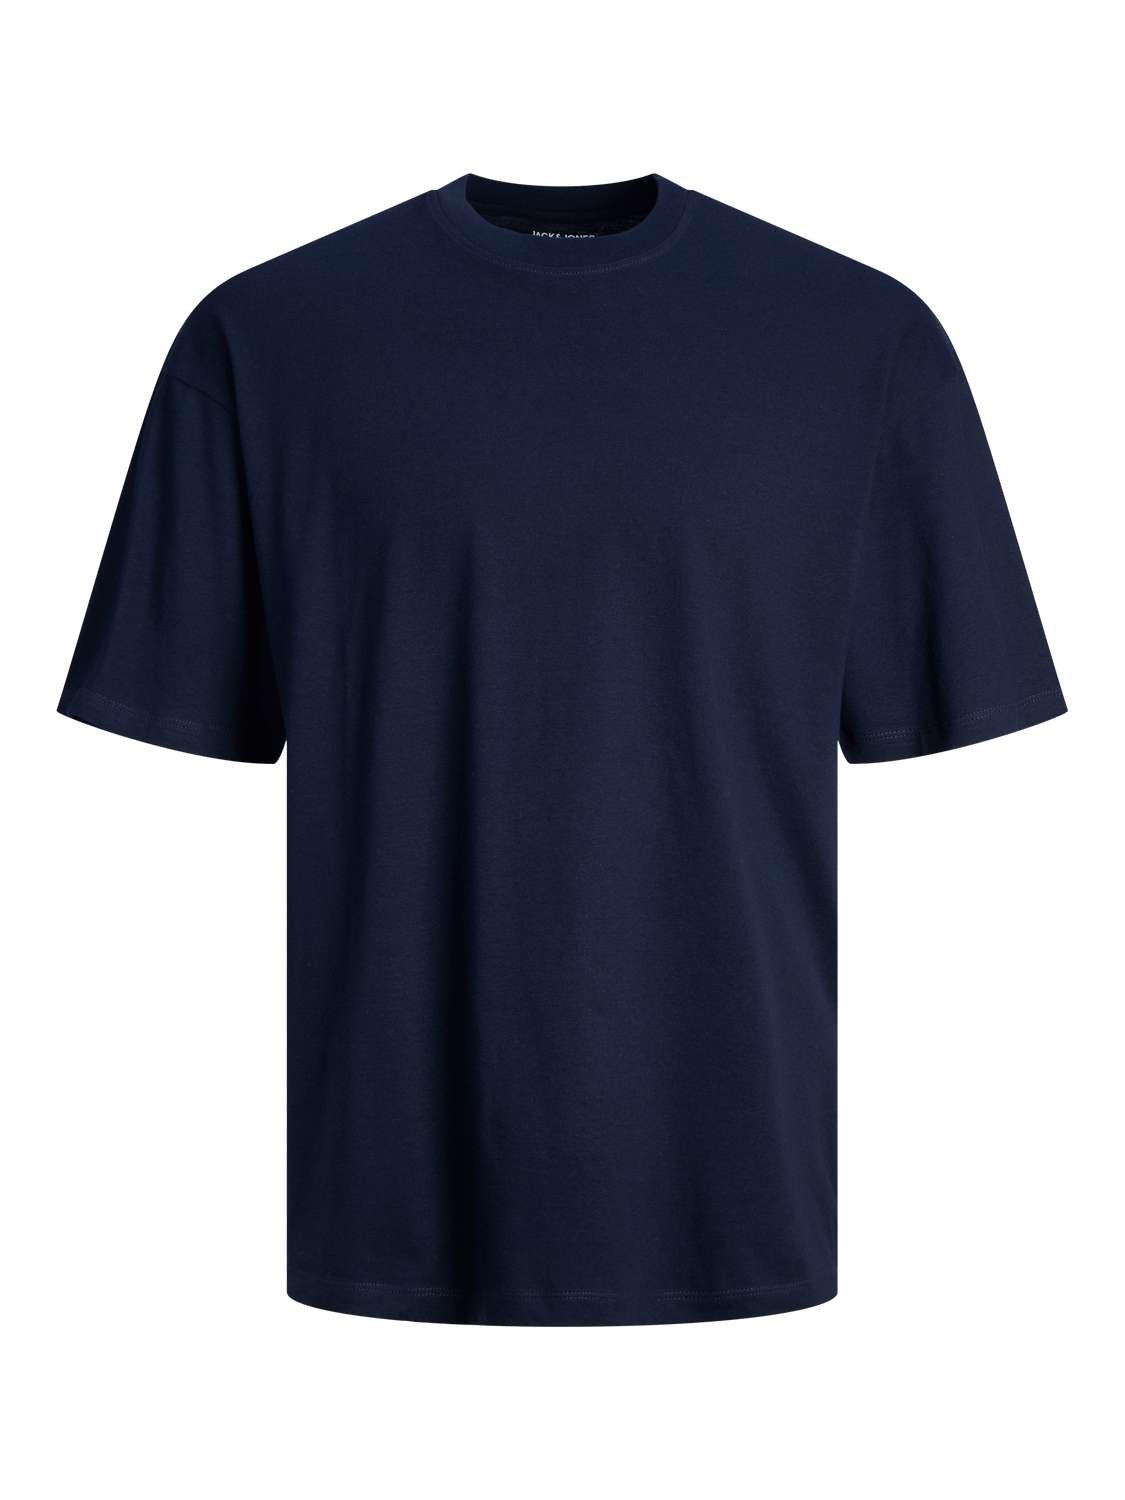 Camiseta básica manga corta azul marino- JJEBRADLEY